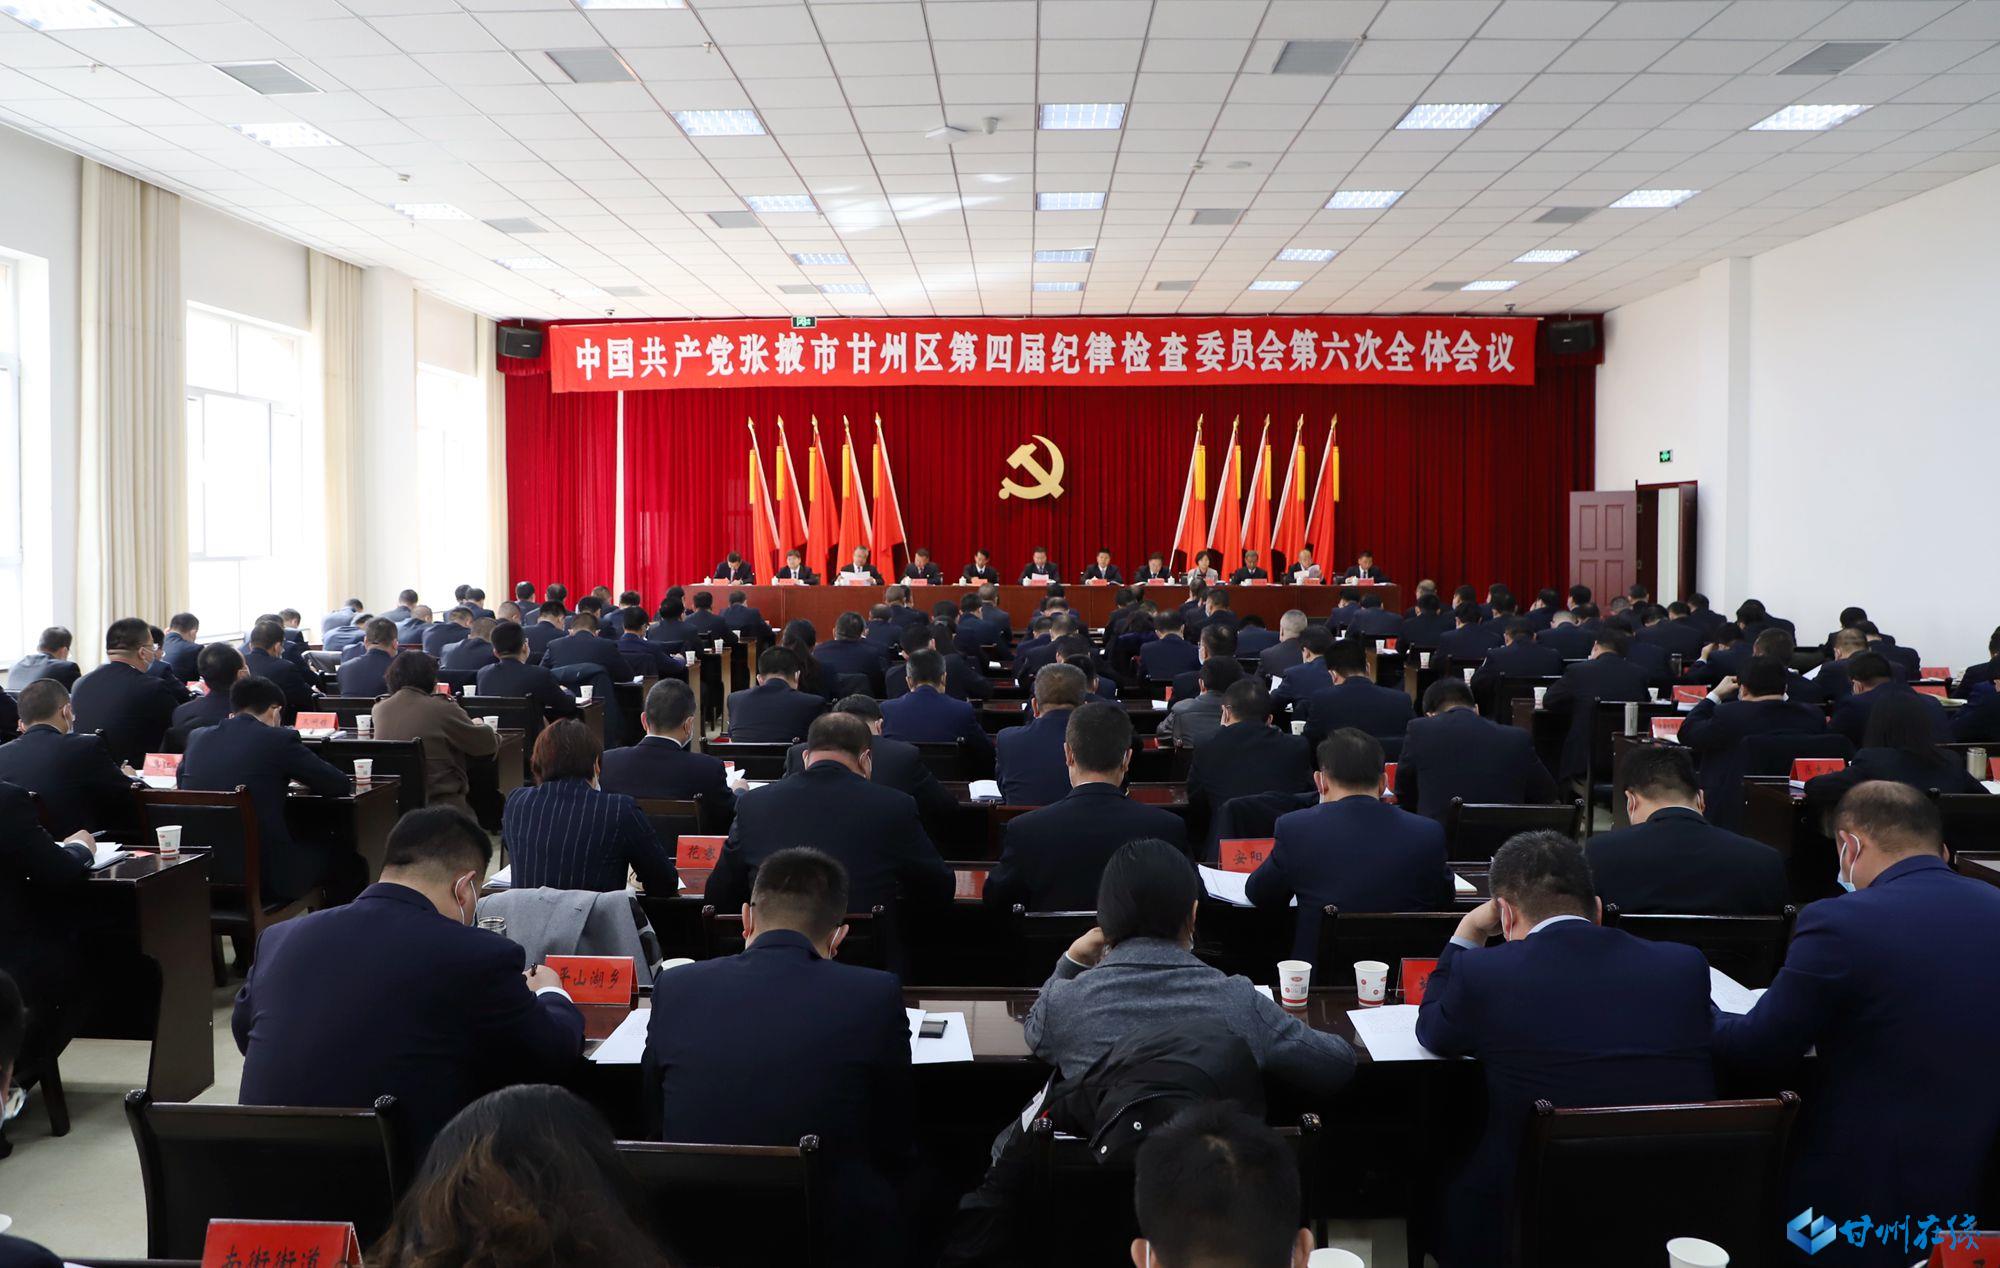 中国共产党张掖市甘州区第四届纪律检查委员会 第六次全体会议决议